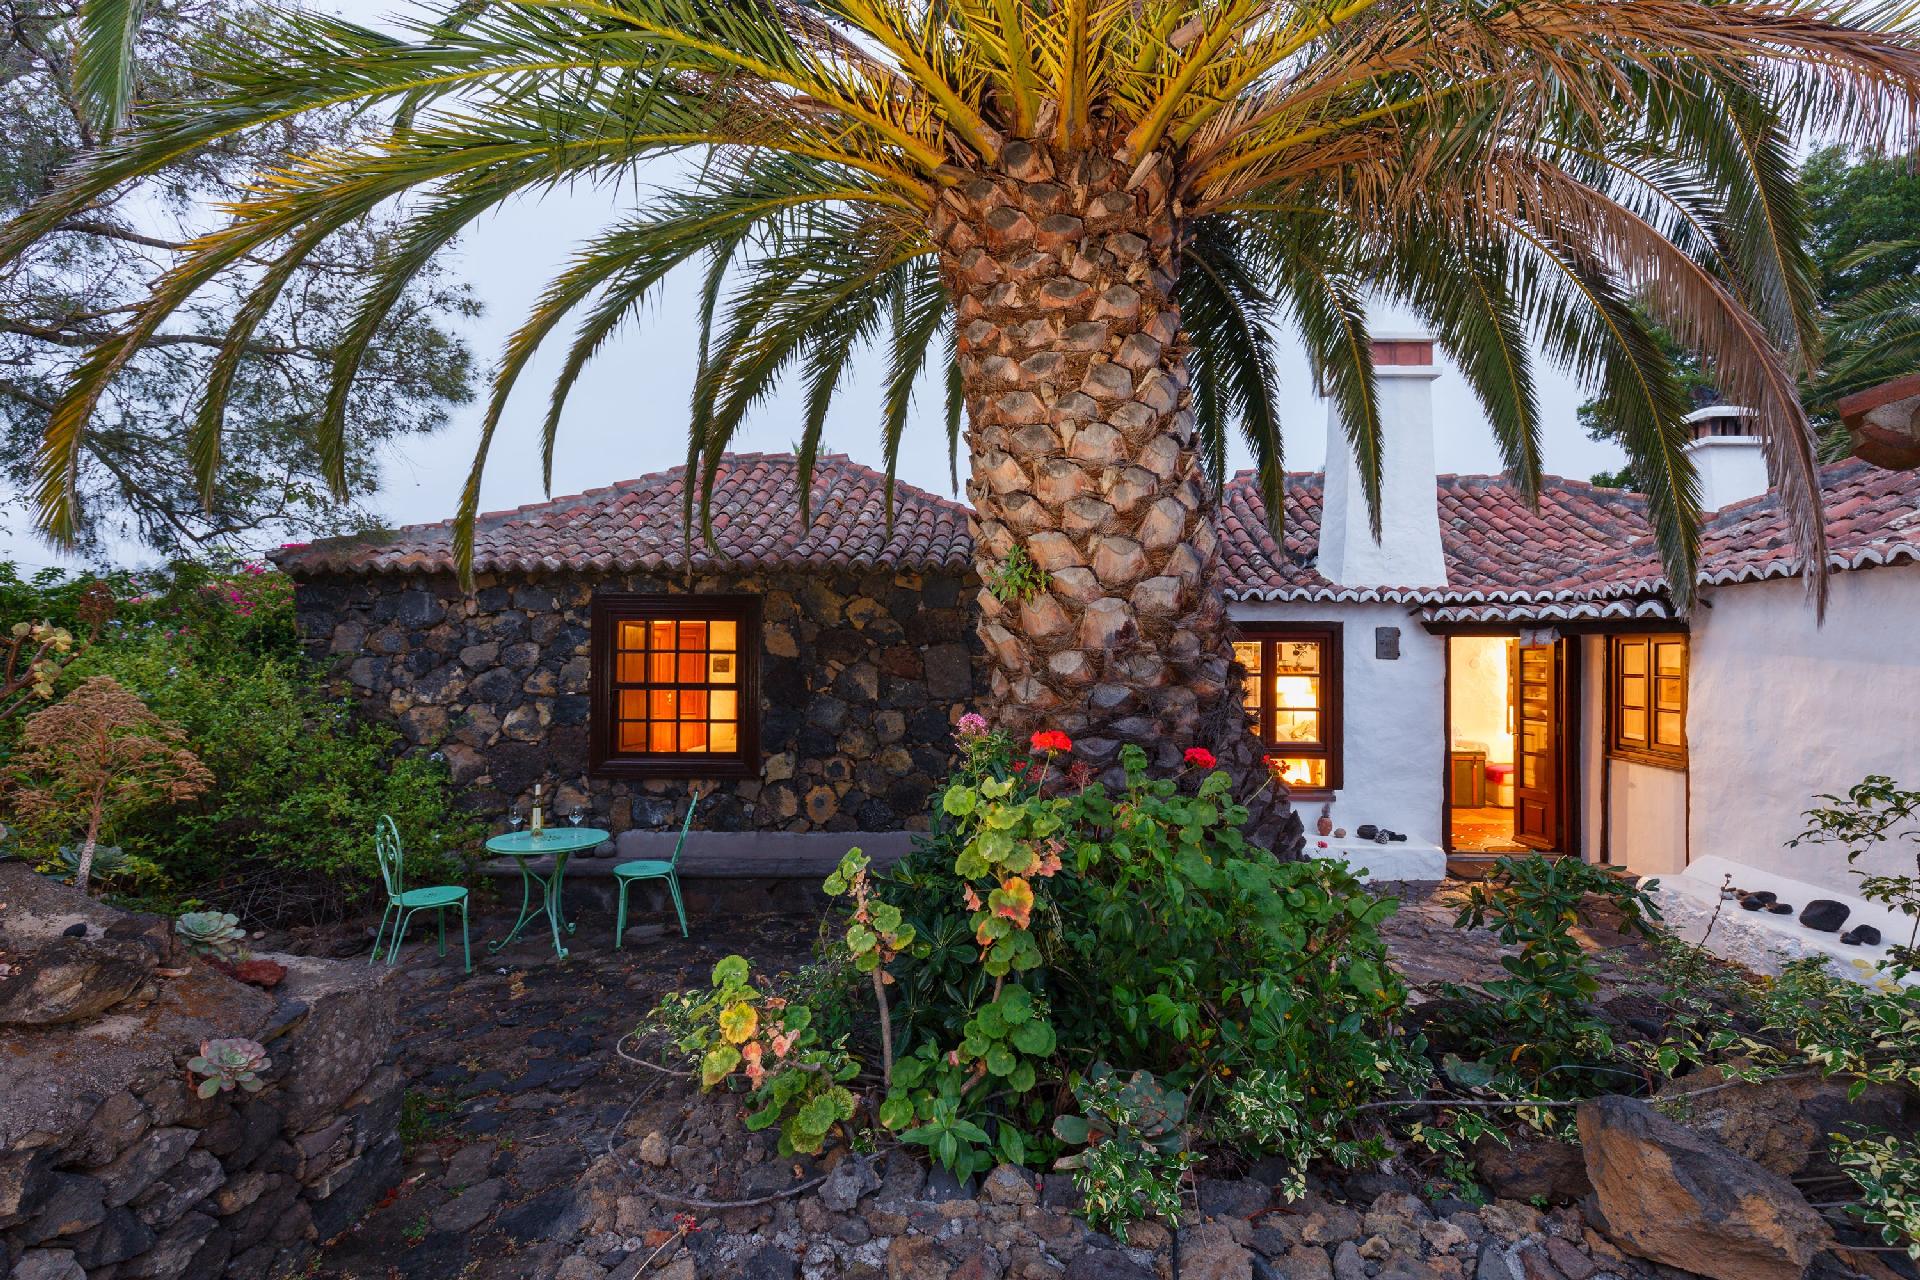 Märchenhaftes kanarisches Landhaus mi idyllis Ferienhaus in Spanien